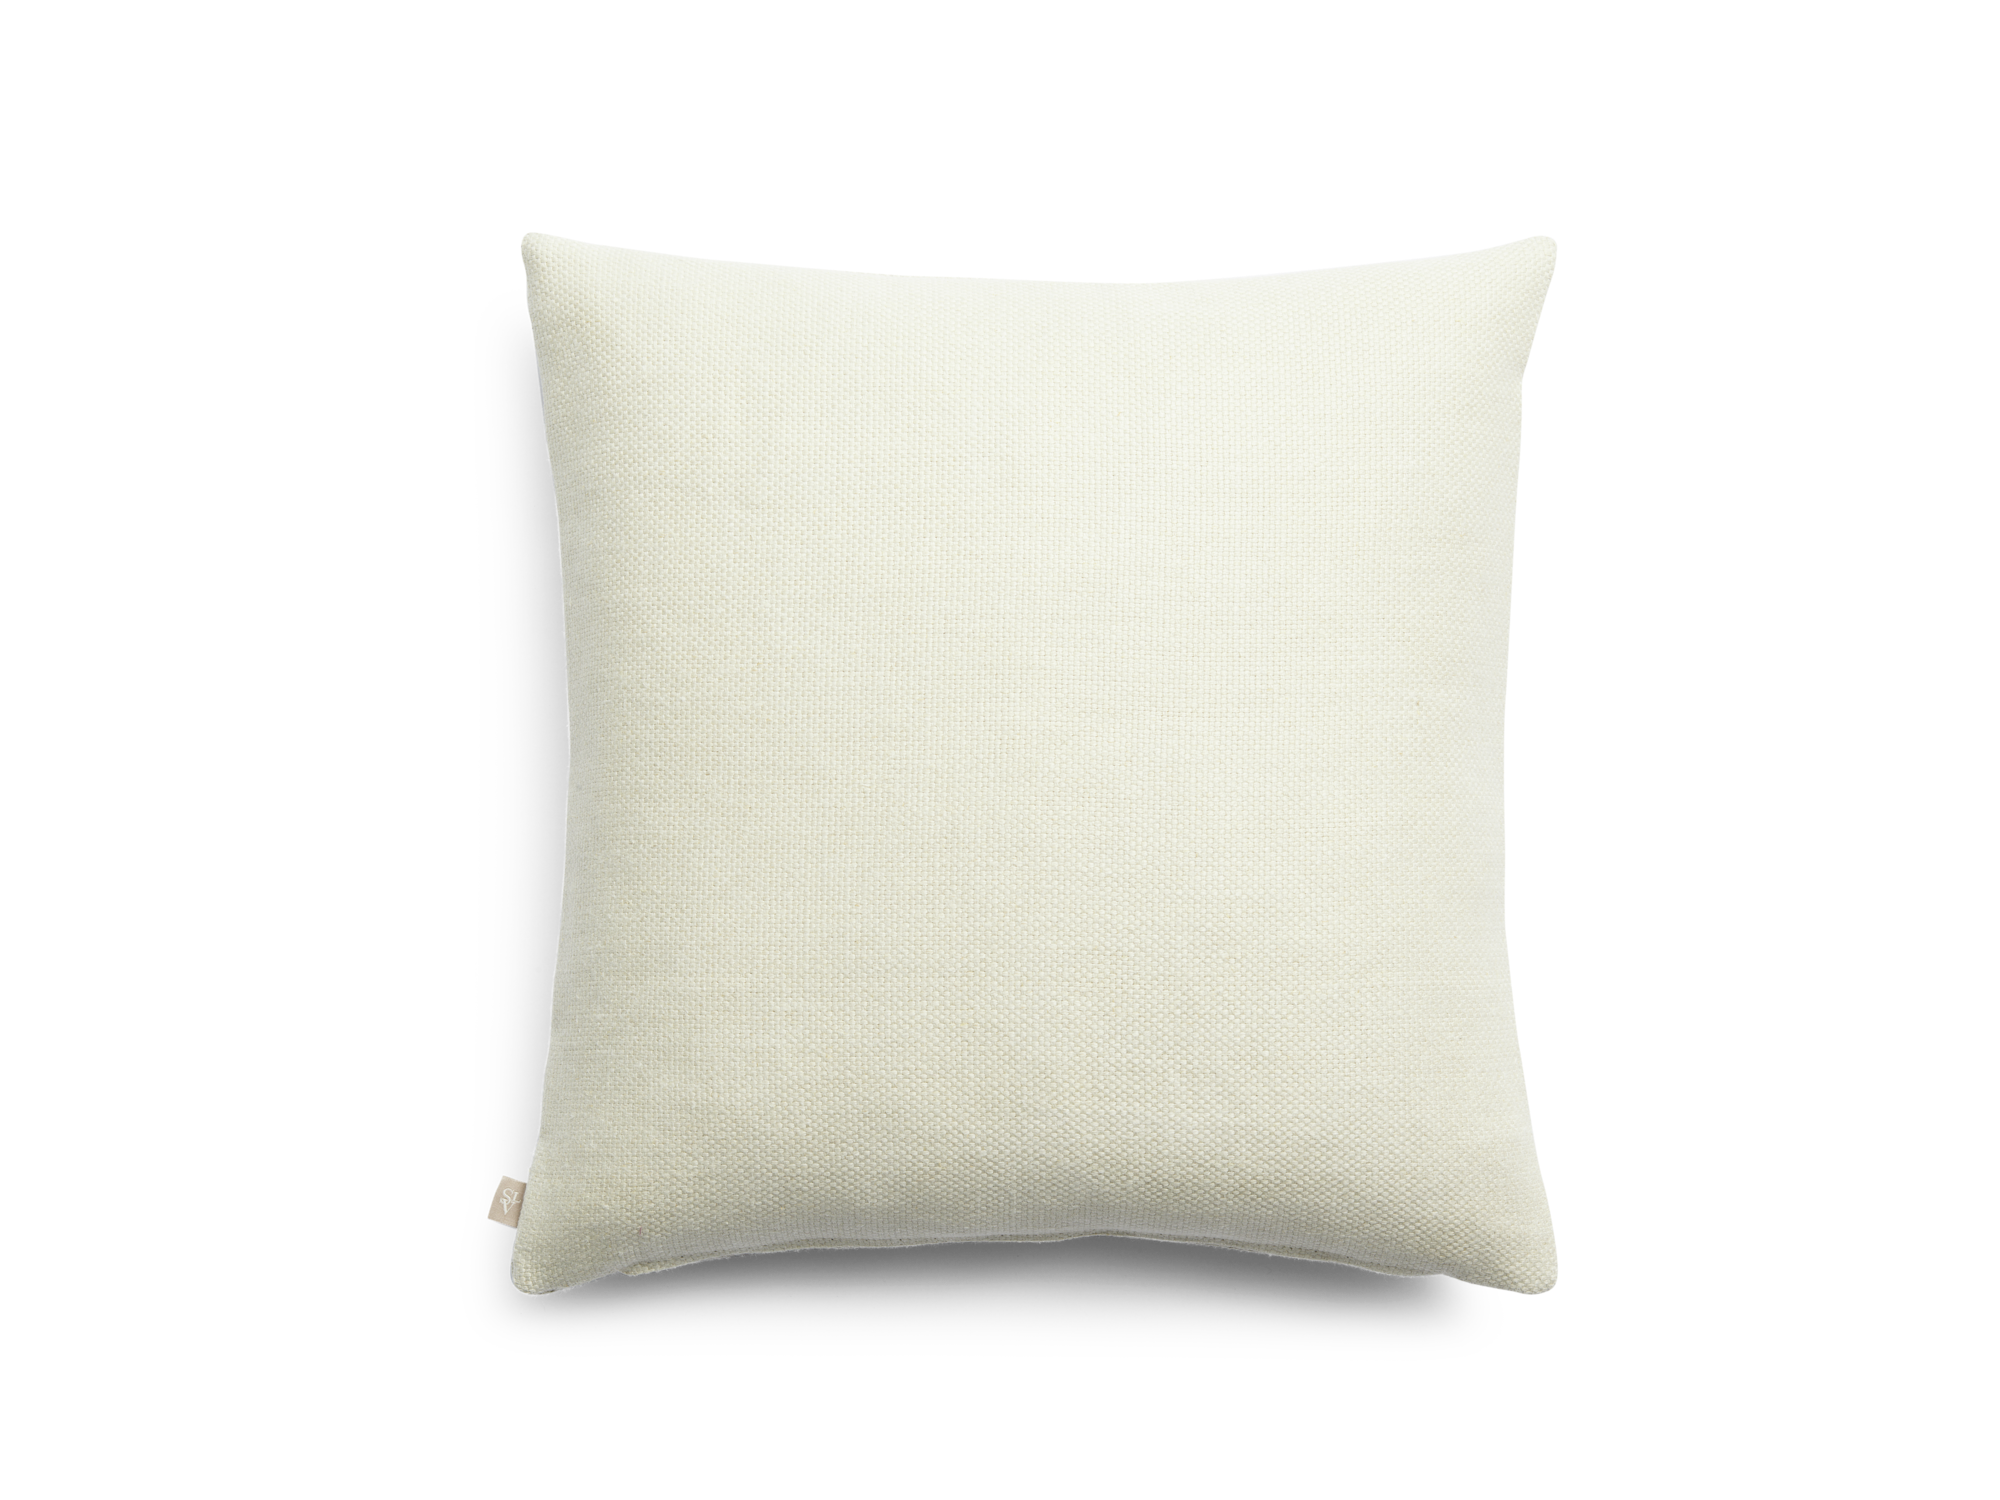 Primair decorative pillow